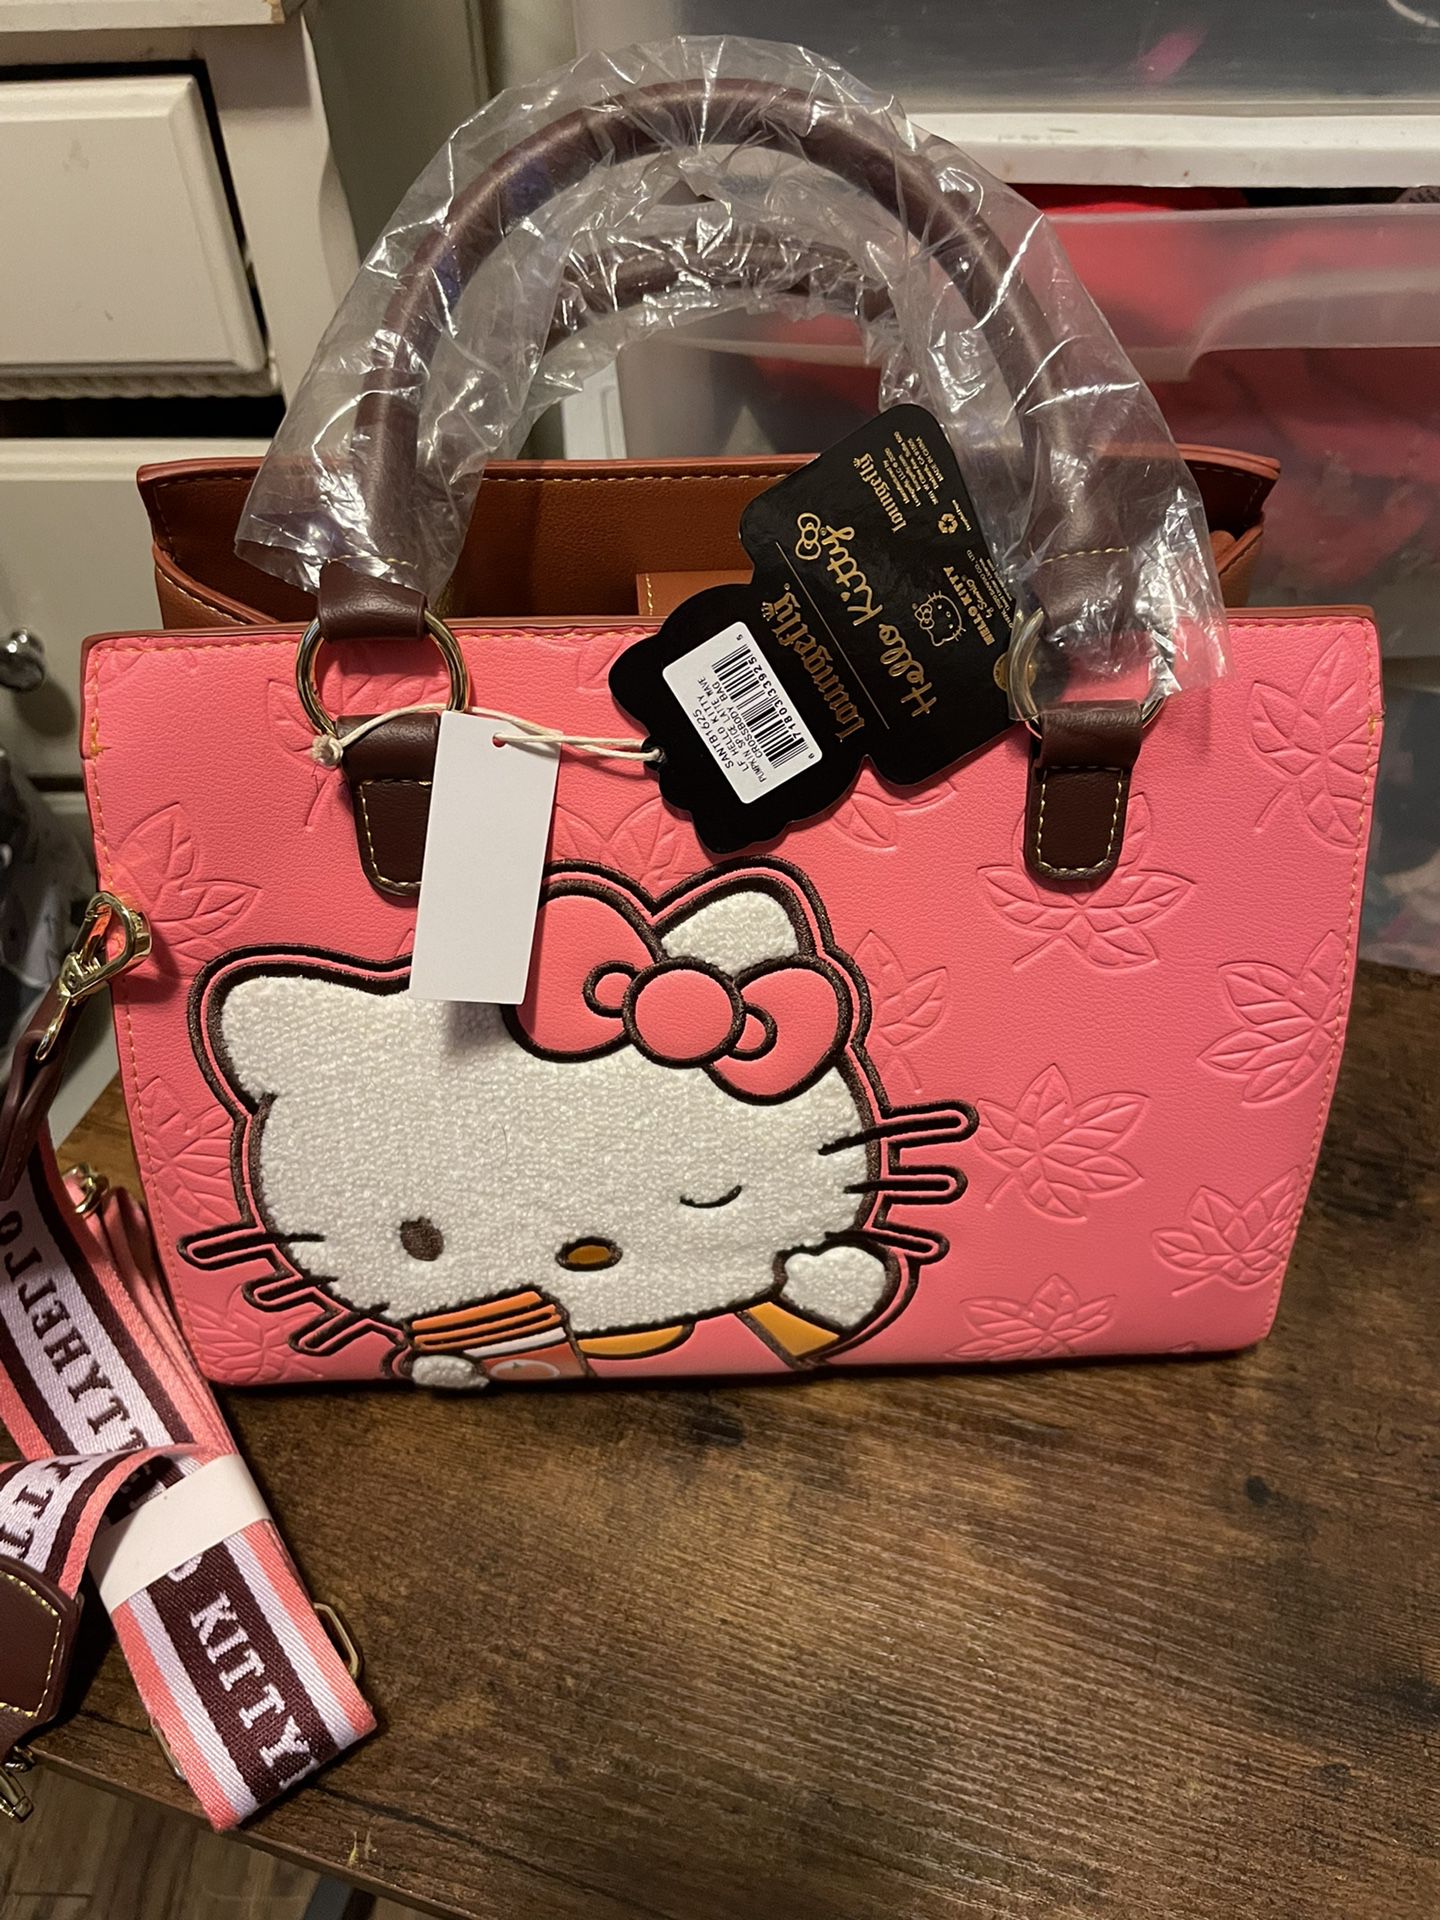 pink hello kitty purse